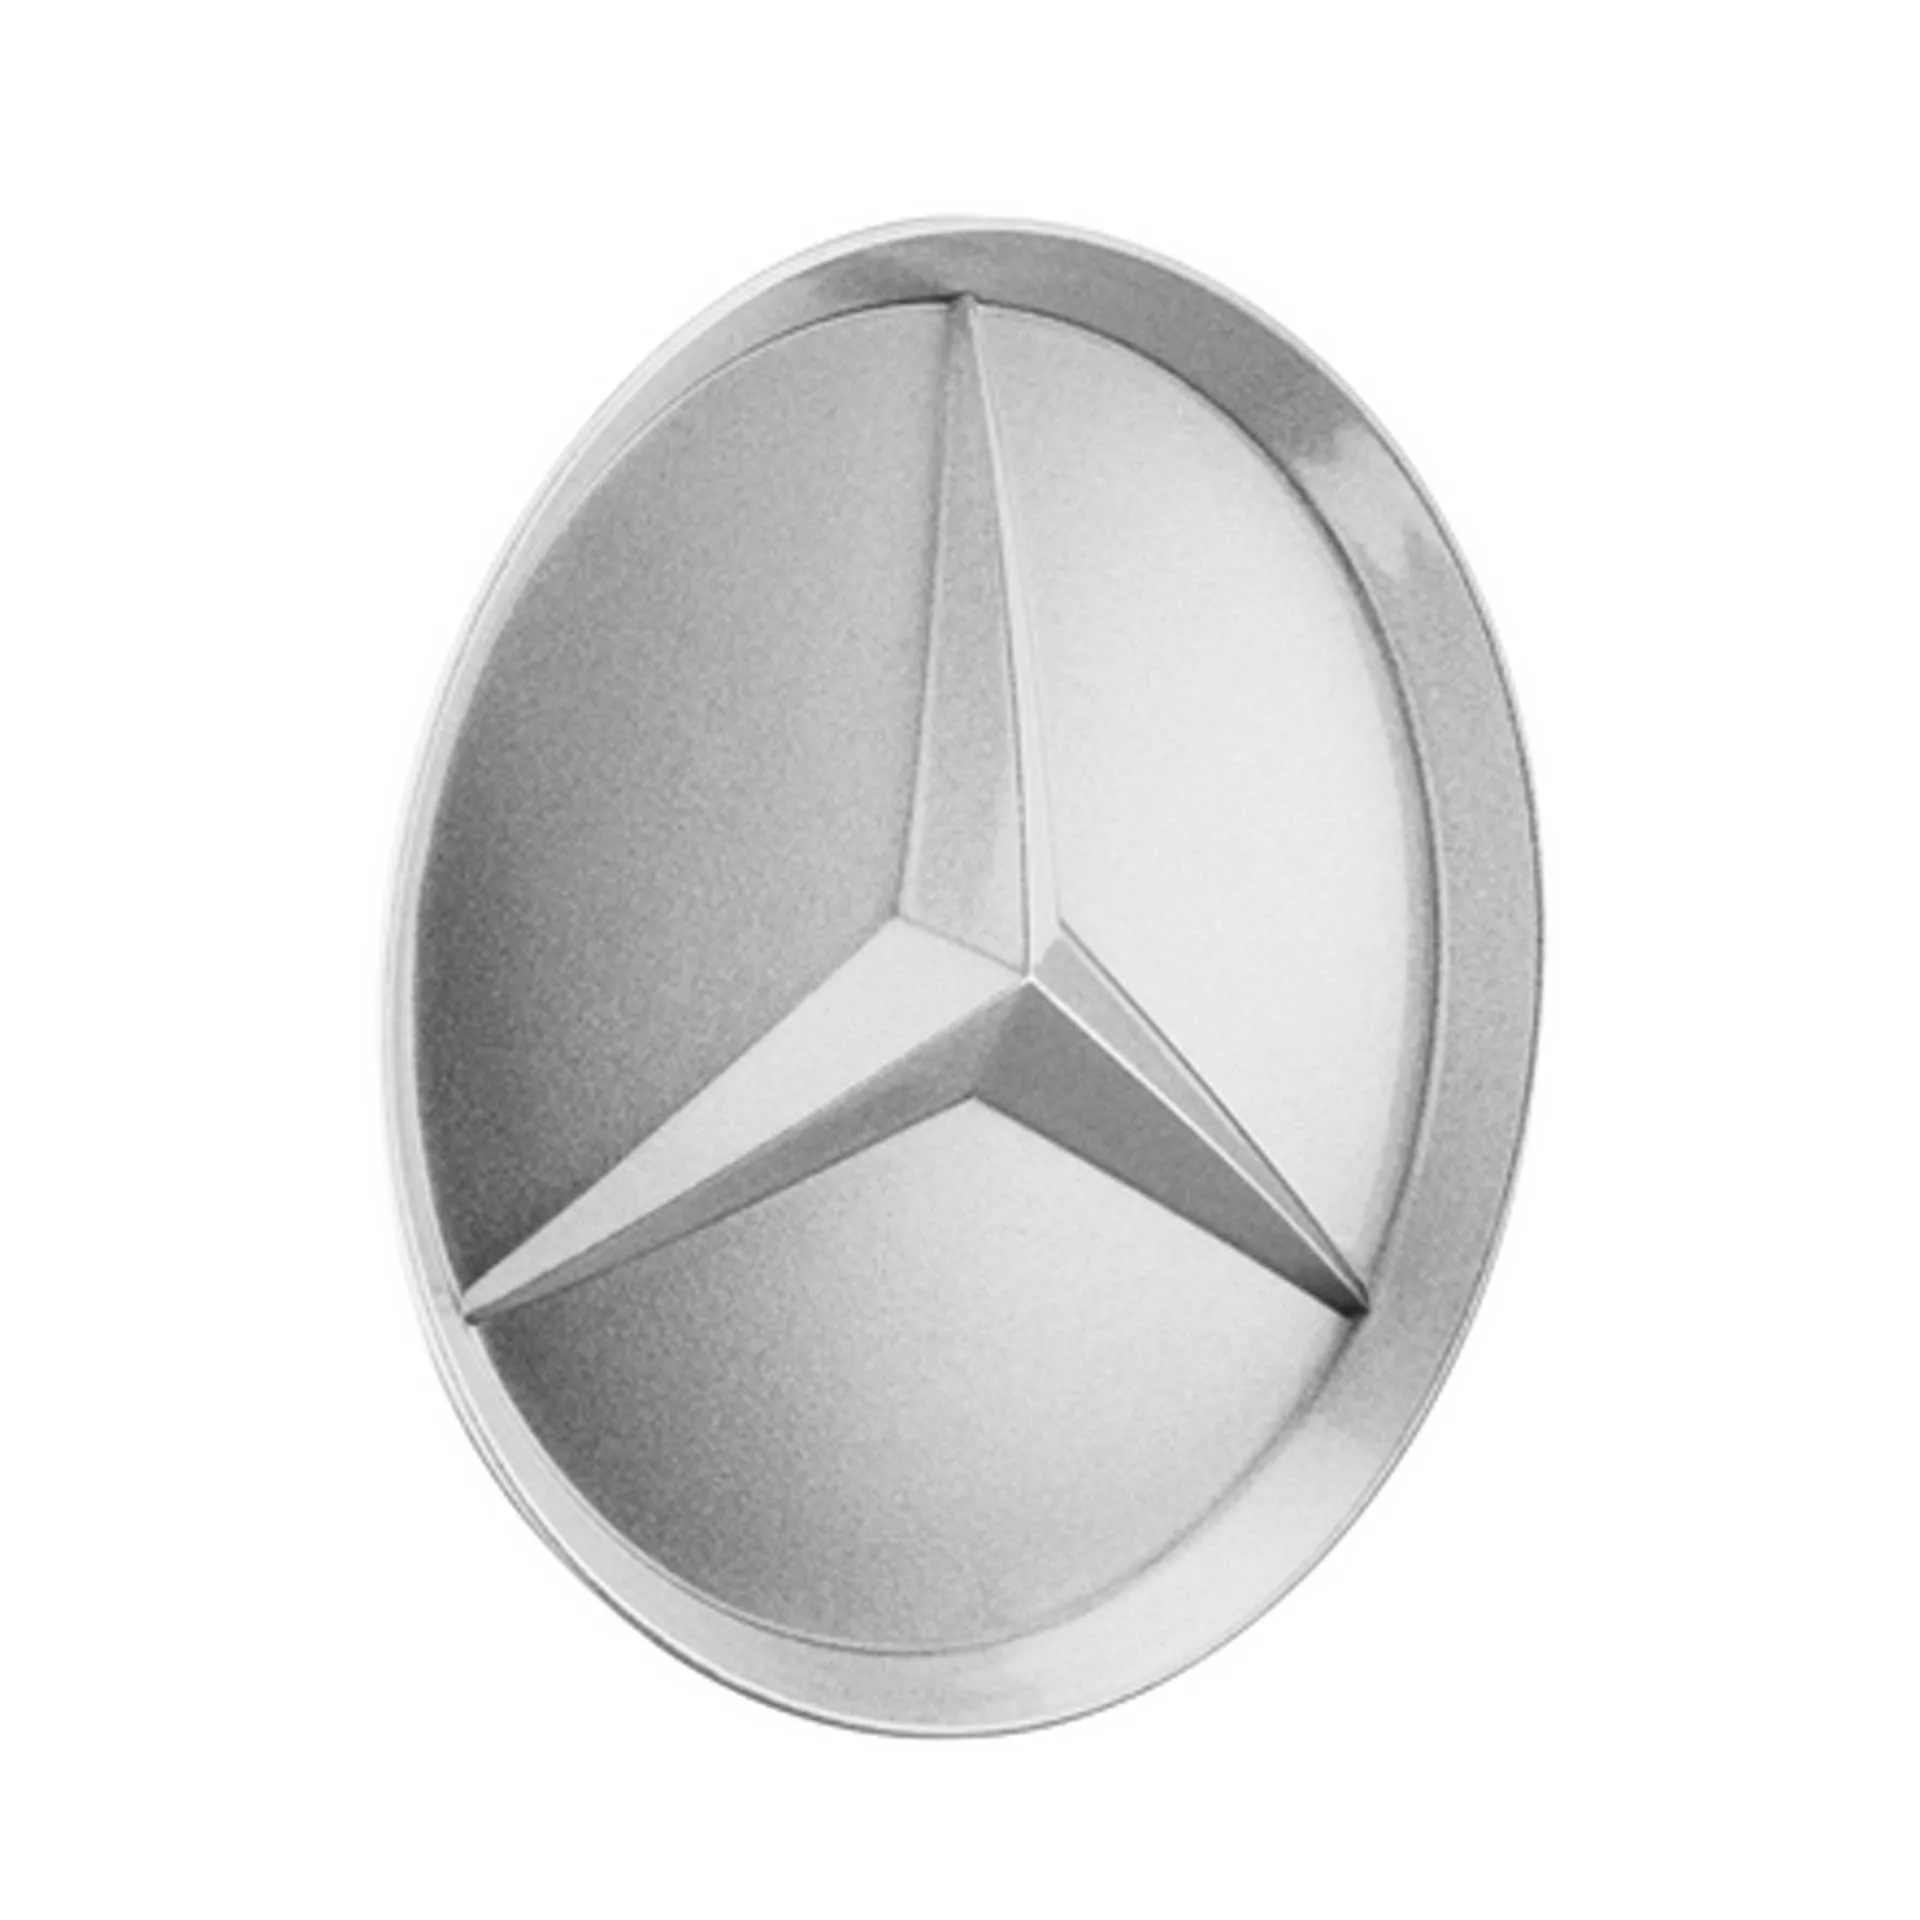 Mercedes-Benz Radnabenabdeckung Stern abgesenkt glanzsilber B66470203